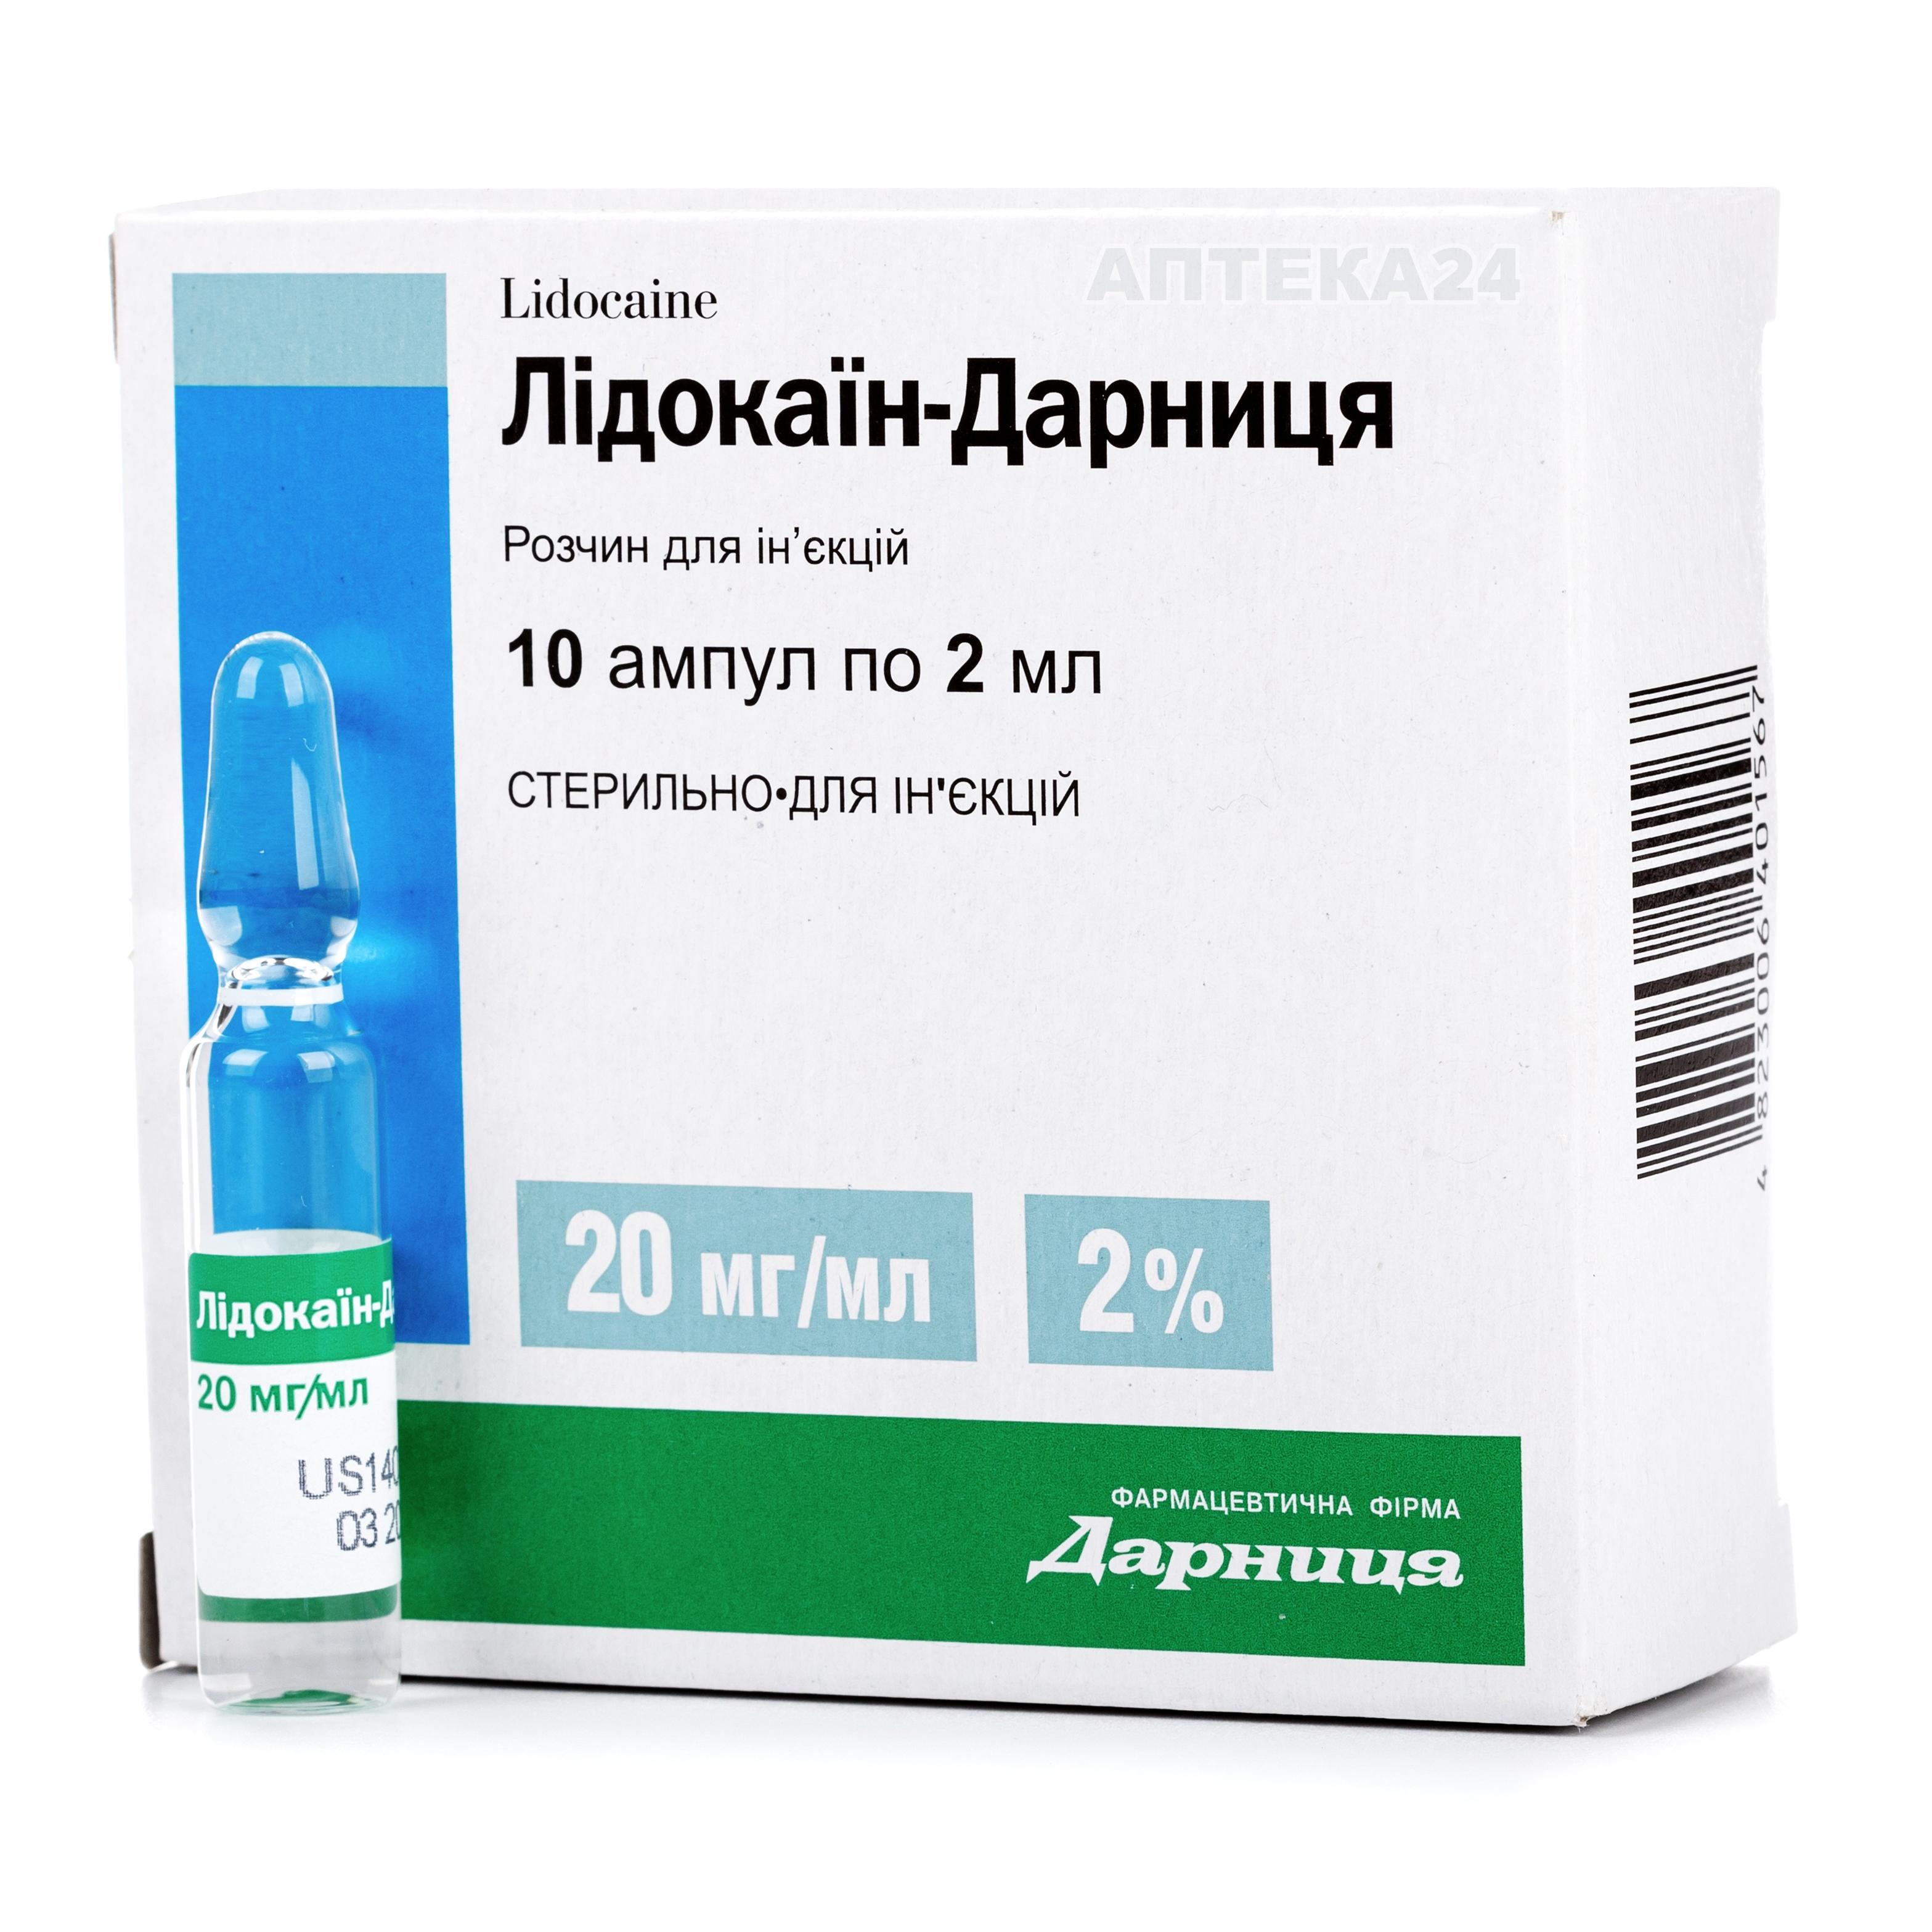 Лидокаин-Дарница раствор в ампулах по 2 мл, 2%, 10 шт.: инструкция .